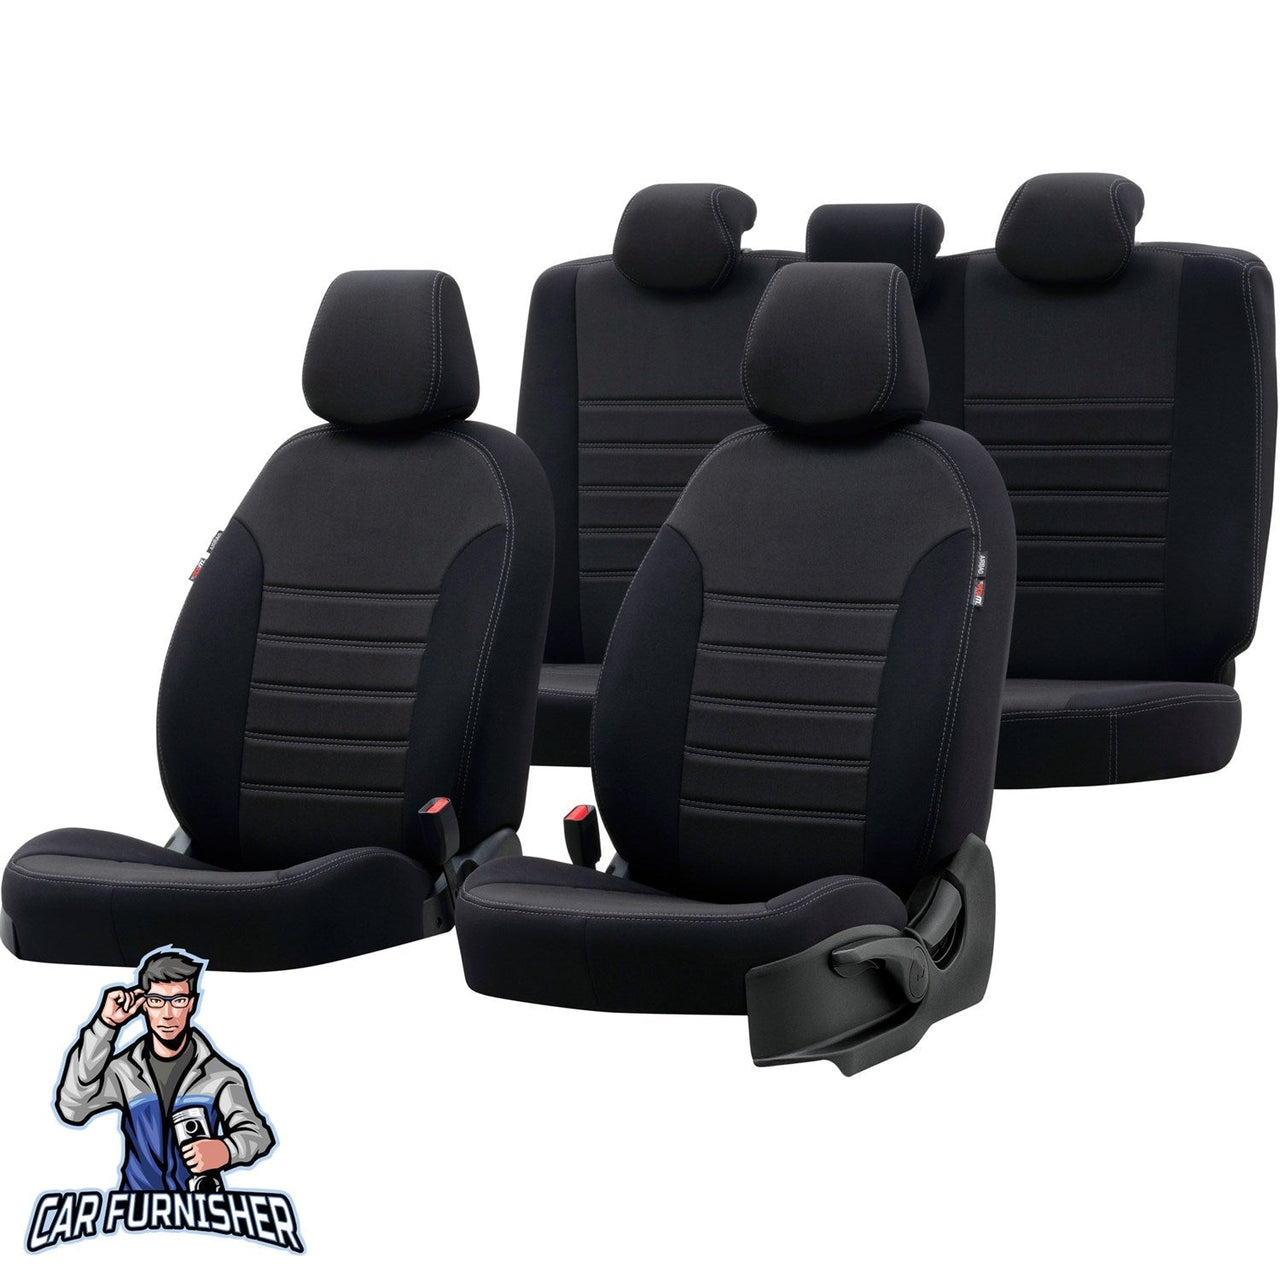 Bmw X3 Seat Cover Original Jacquard Design Black Jacquard Fabric